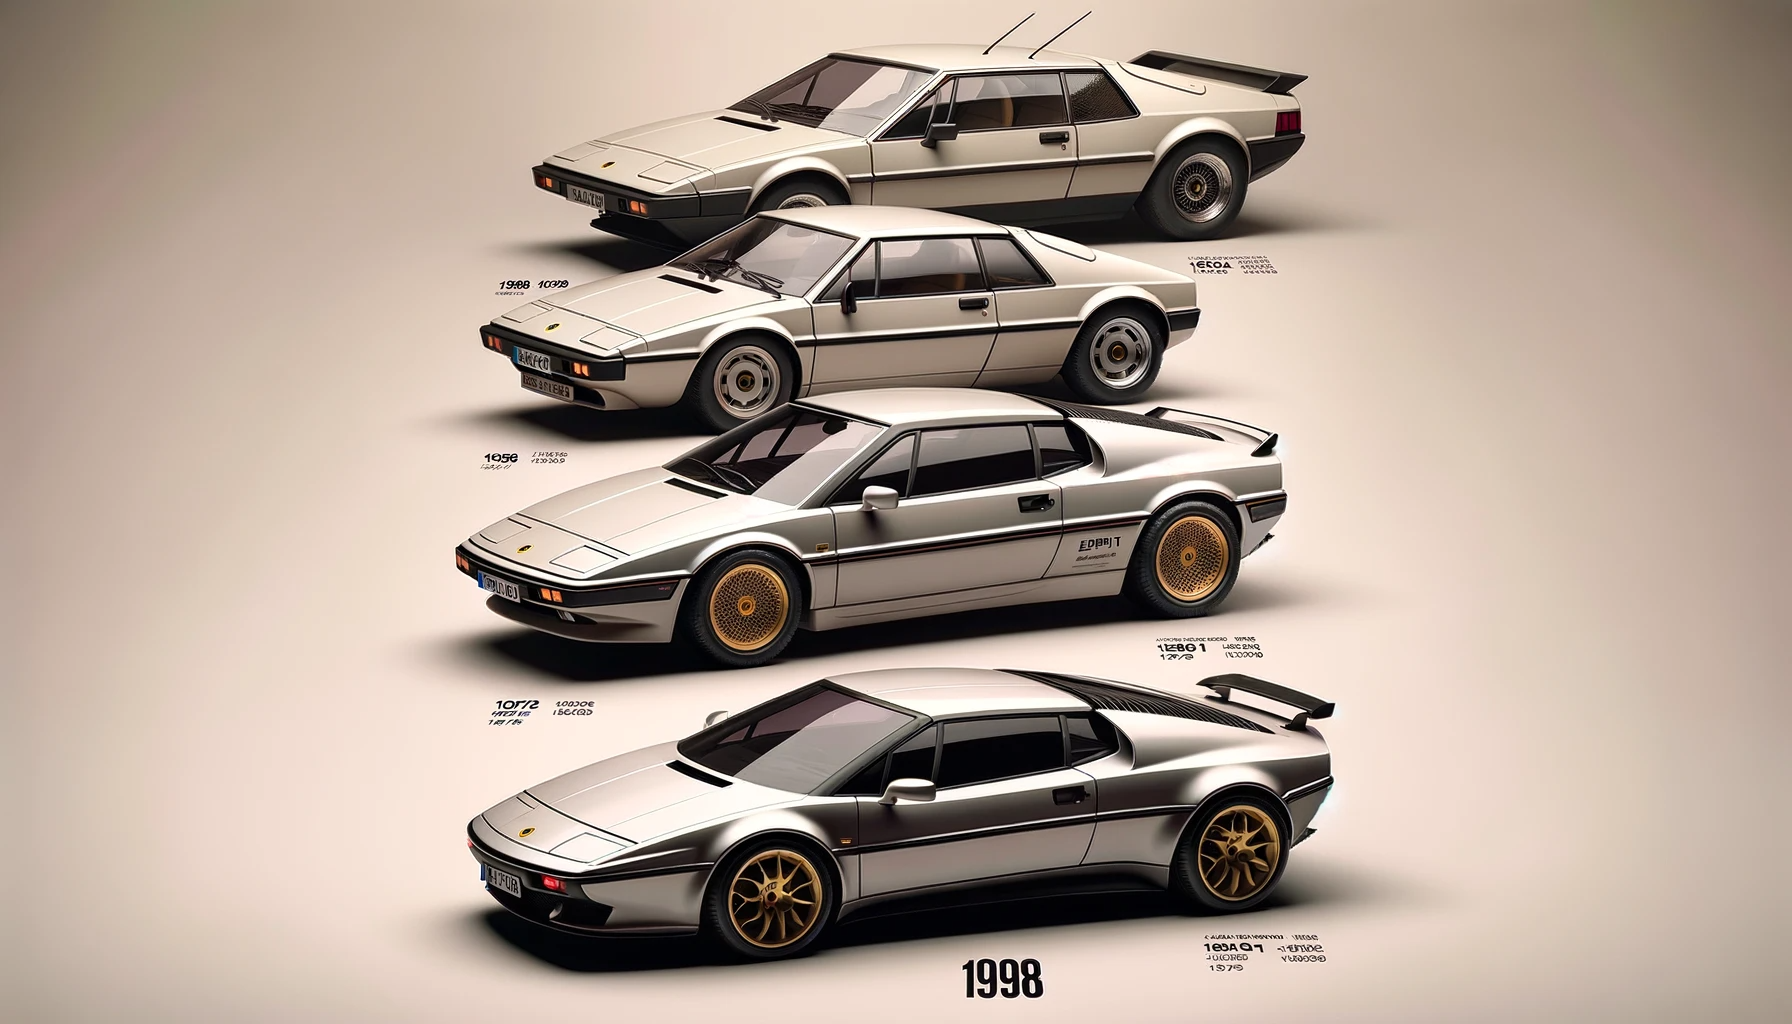 Evolution of Design The 1998 Lotus Esprit